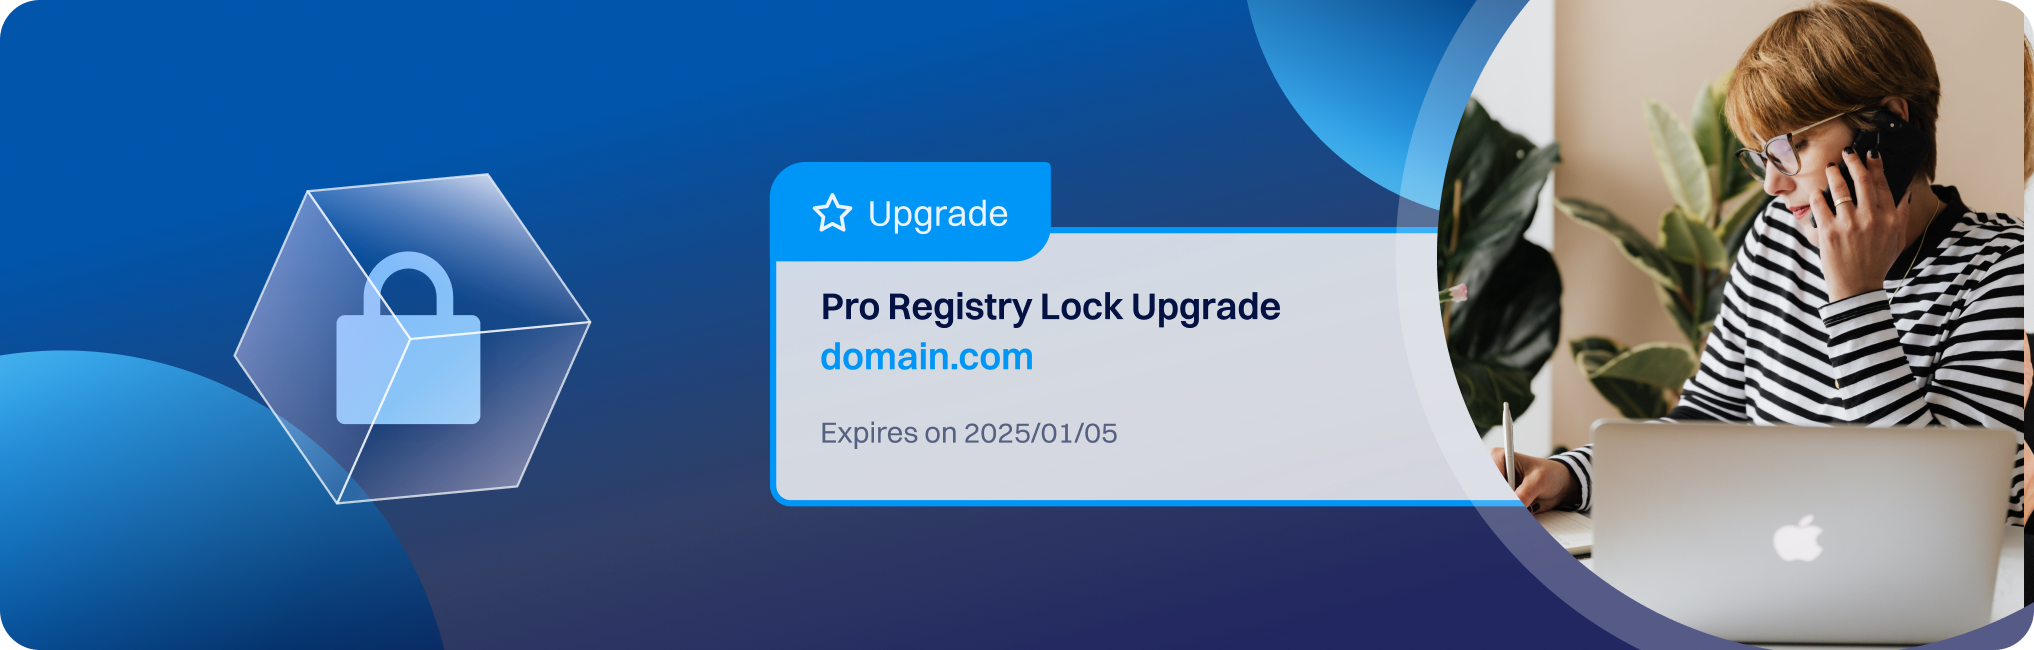 Registry lock launch